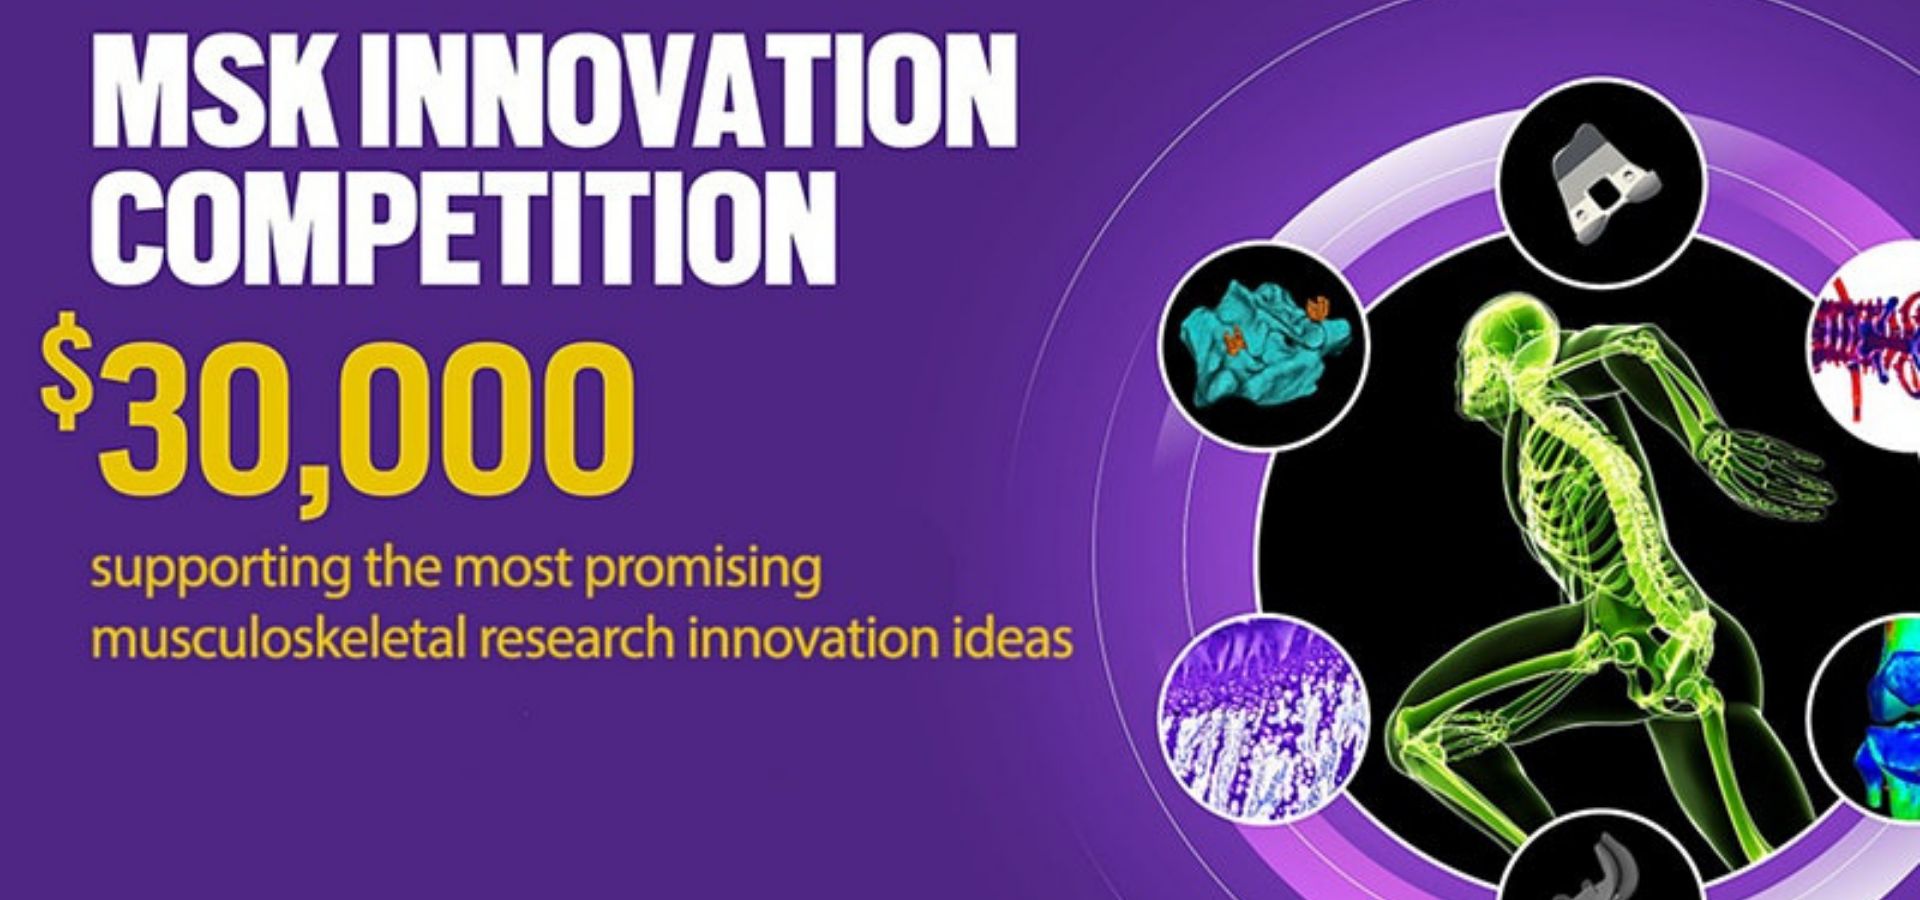 Innovation (MSK Innovation Competition 2021) London Economic